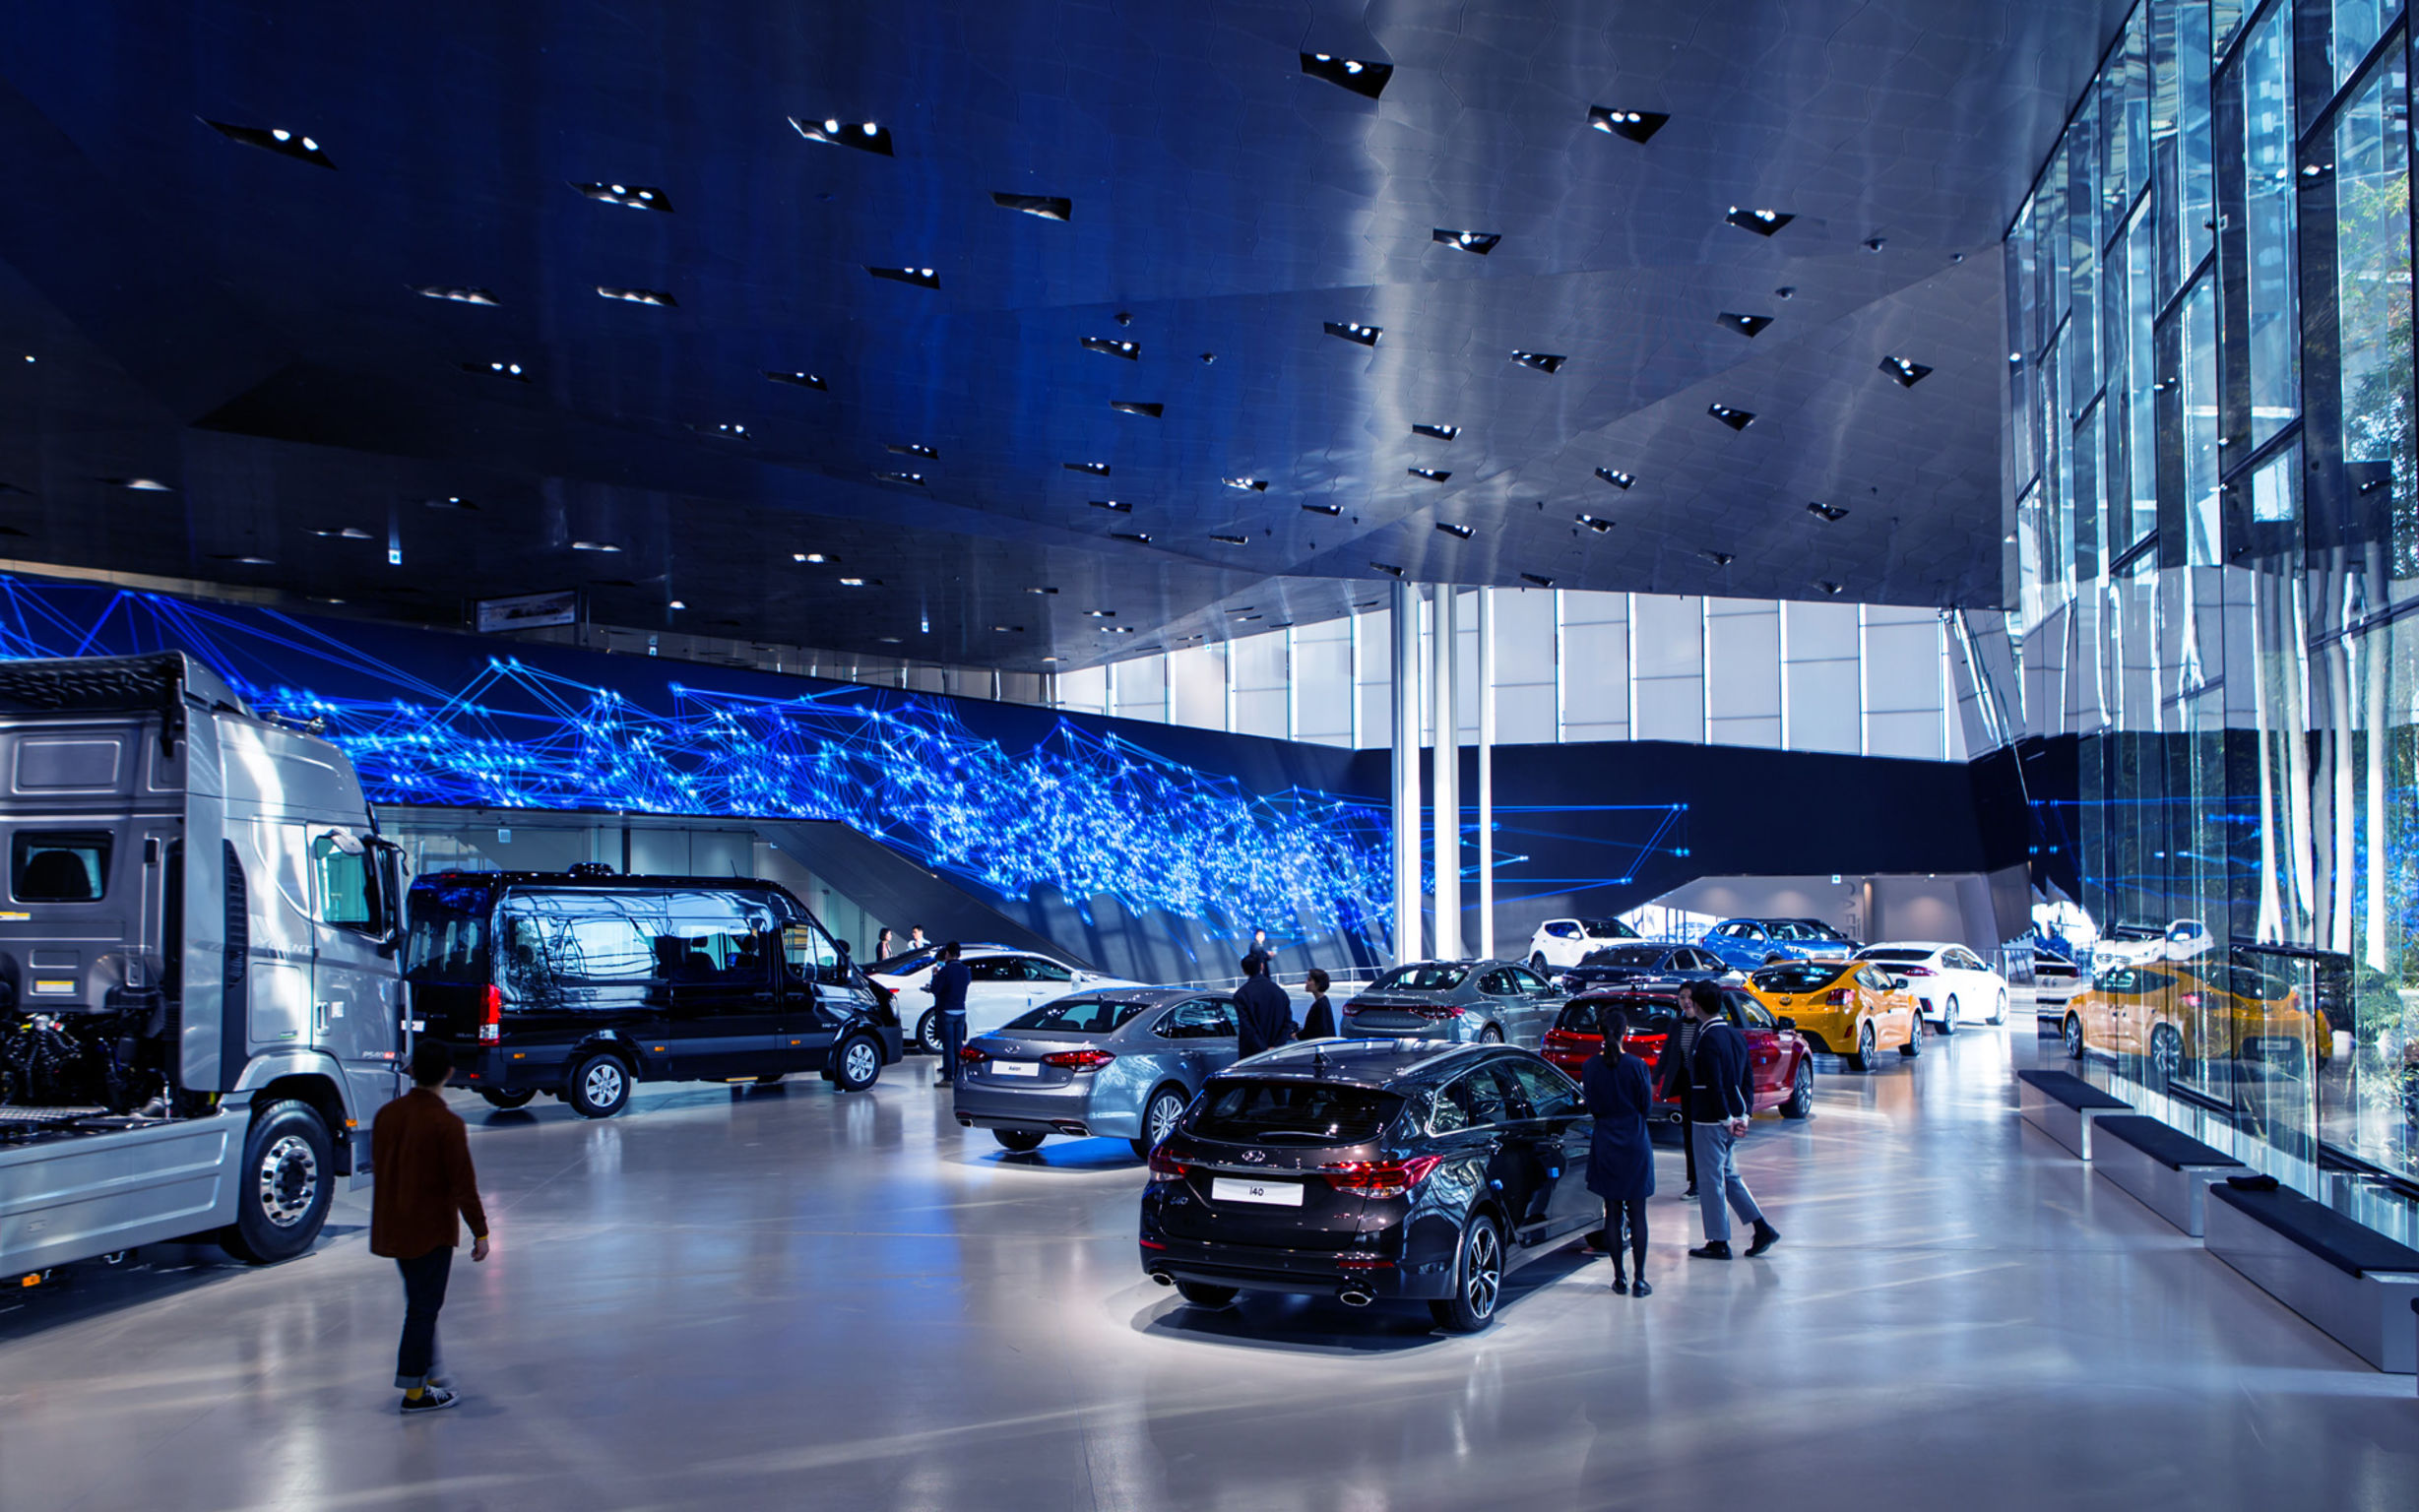 Hyundai Motorstudio Goyang